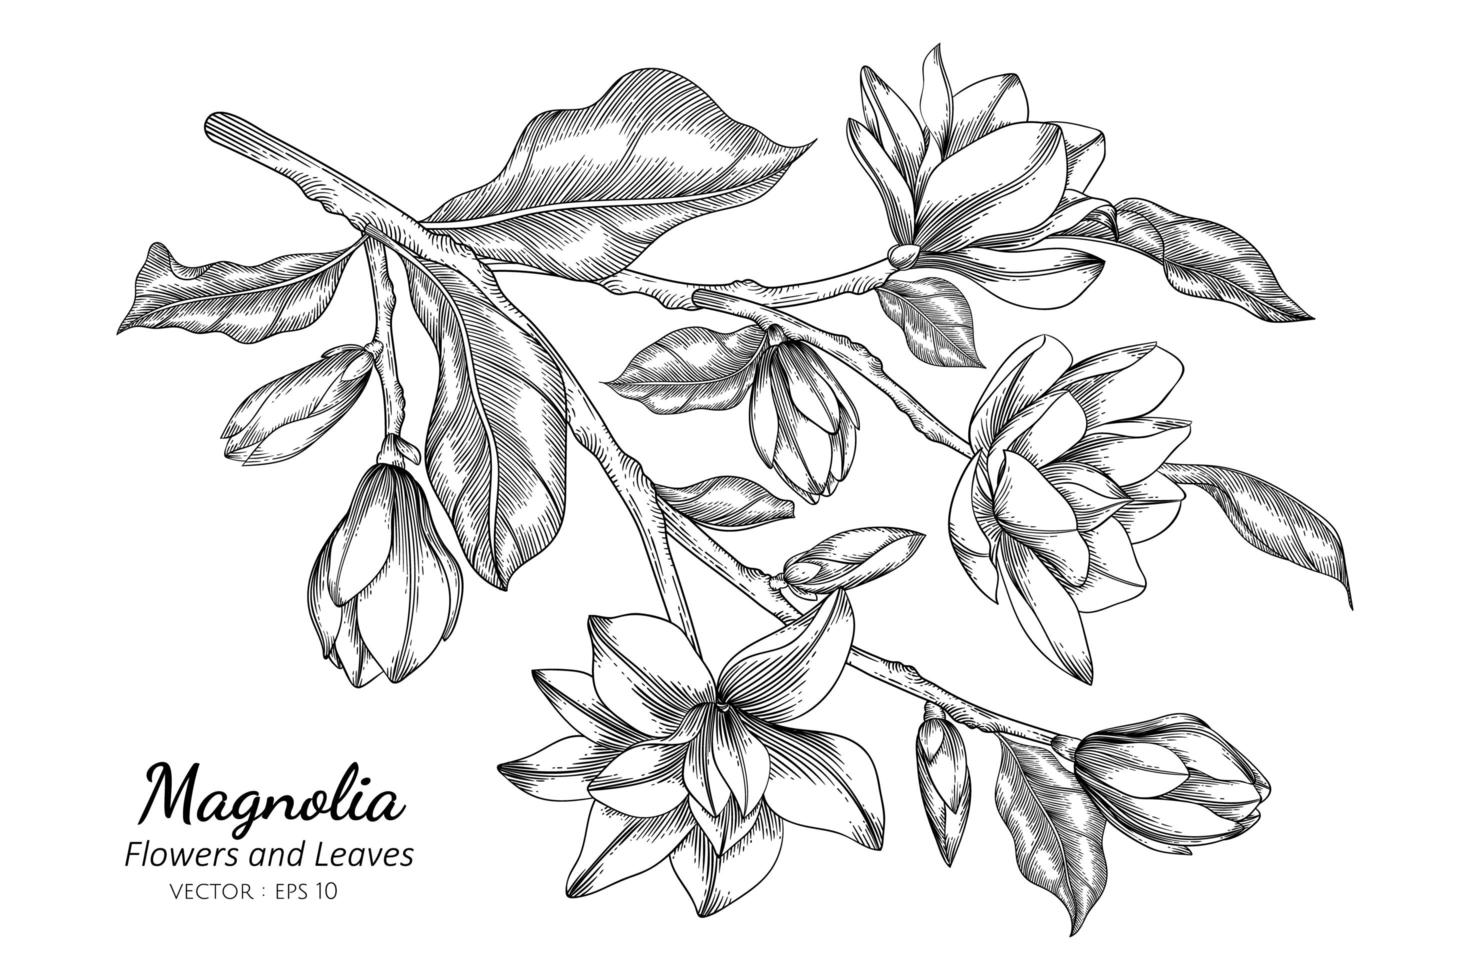 magnolia blomma och blad ritning illustration med konturteckningar på vita bakgrunder vektor